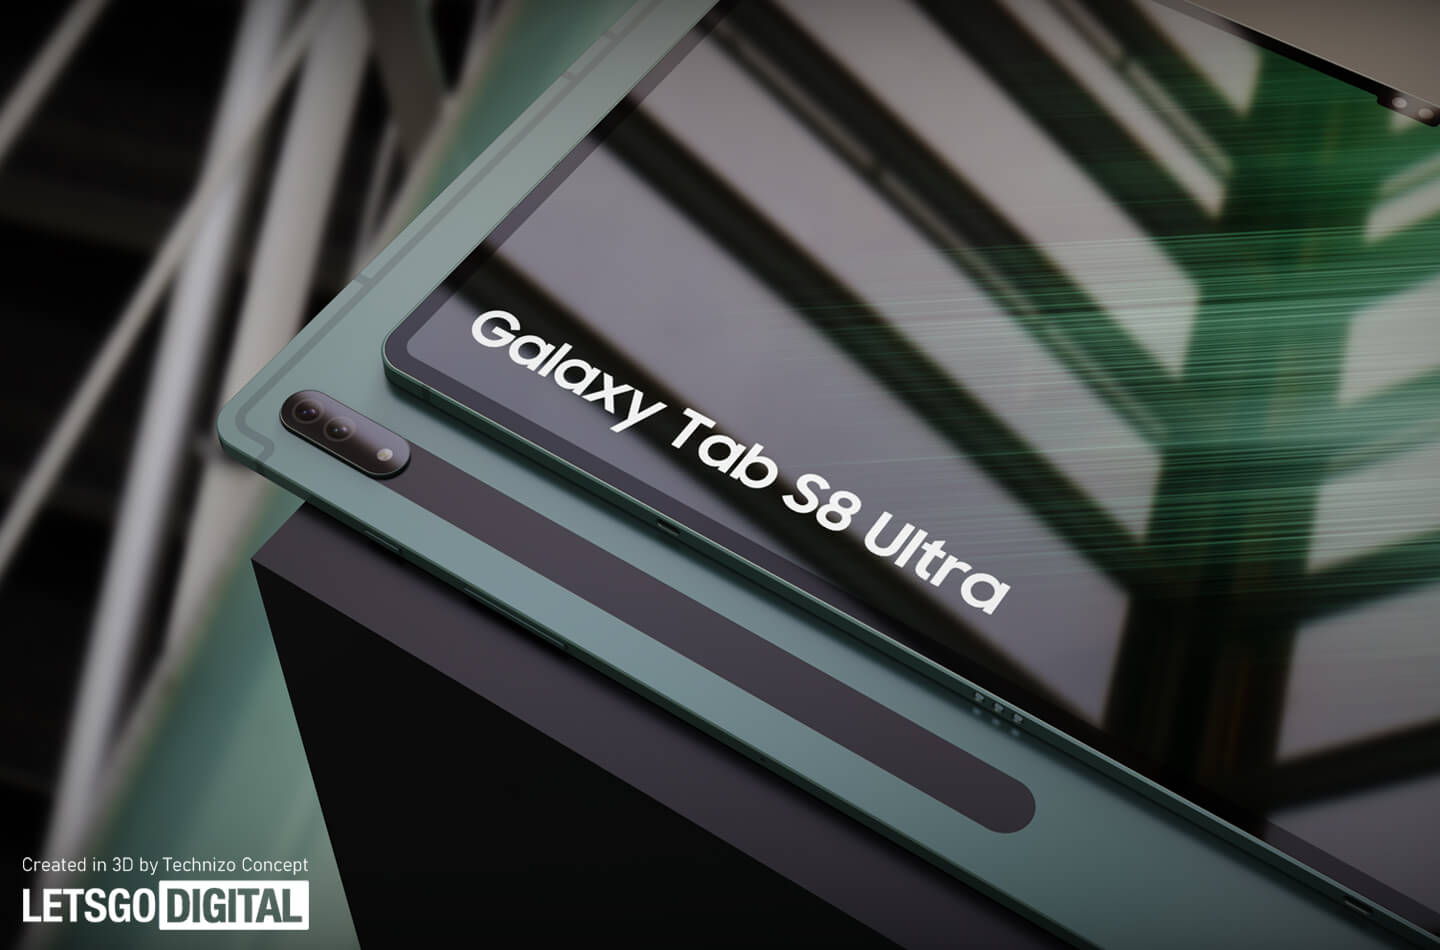 Galaxy Tab S8 Ультра